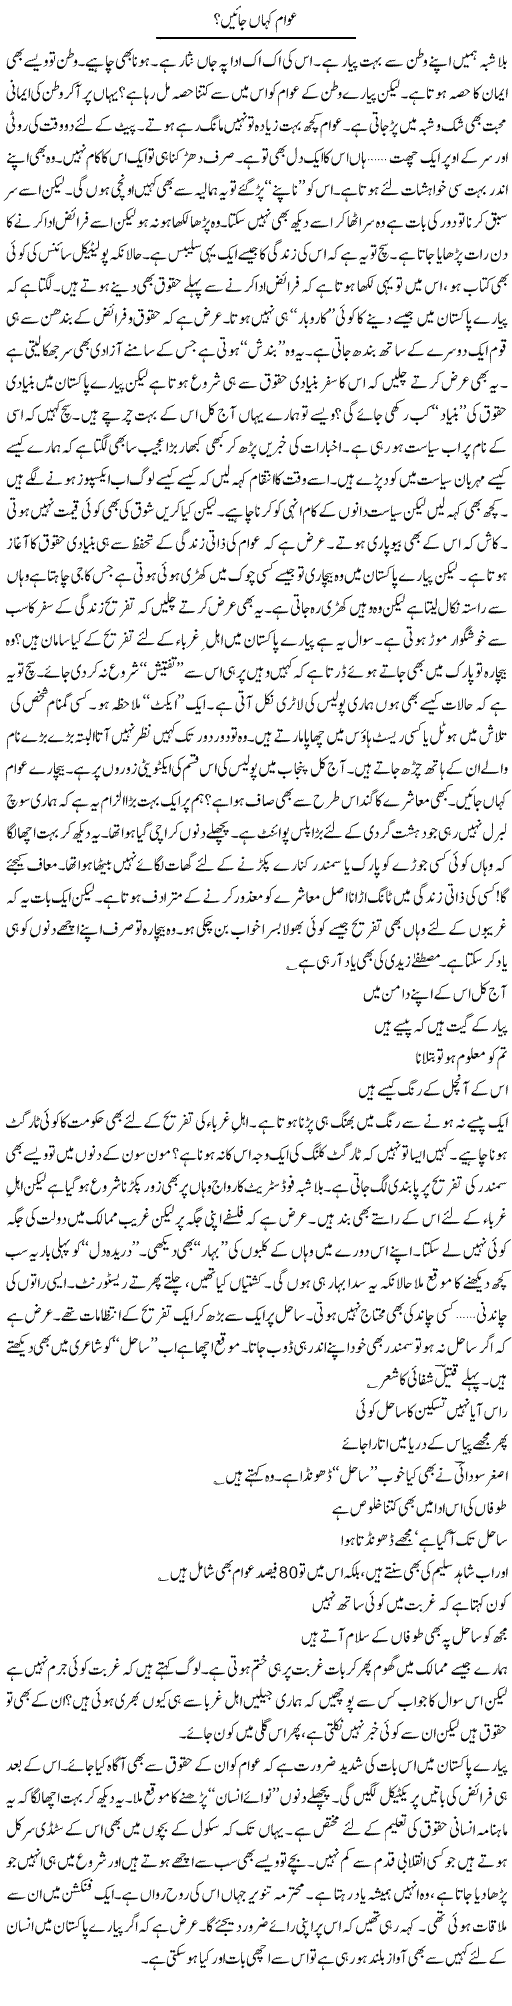 Awam Kahan Express Column Ijaz Hafeez 3 July 2010